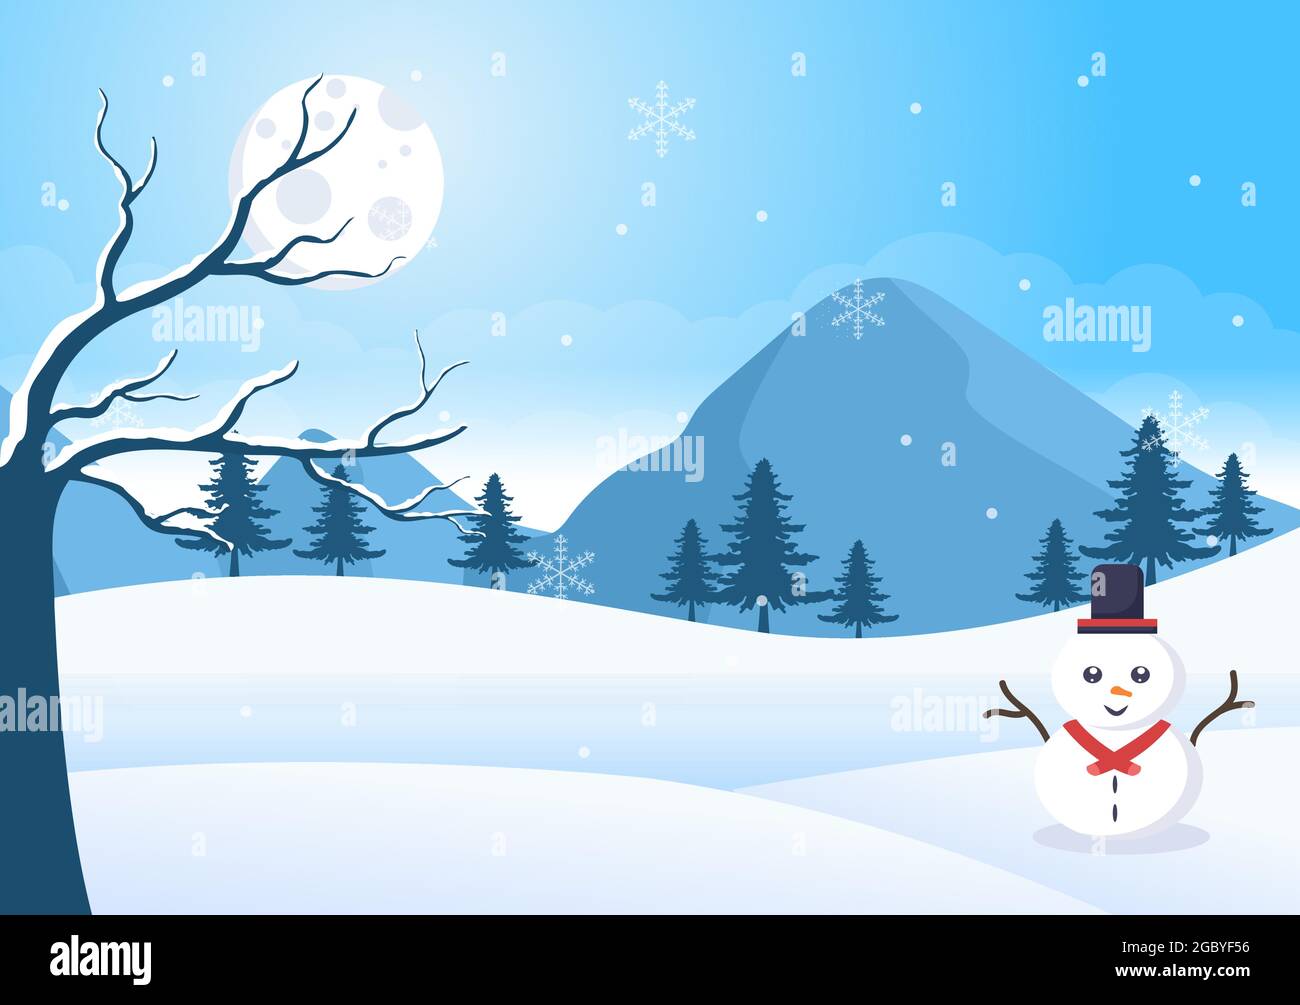 Natale Inverno Paesaggio e Capodanno sfondo illustrazione vettoriale con una vista di caduta neve bianca, alberi, montagne in stile piatto Design Illustrazione Vettoriale